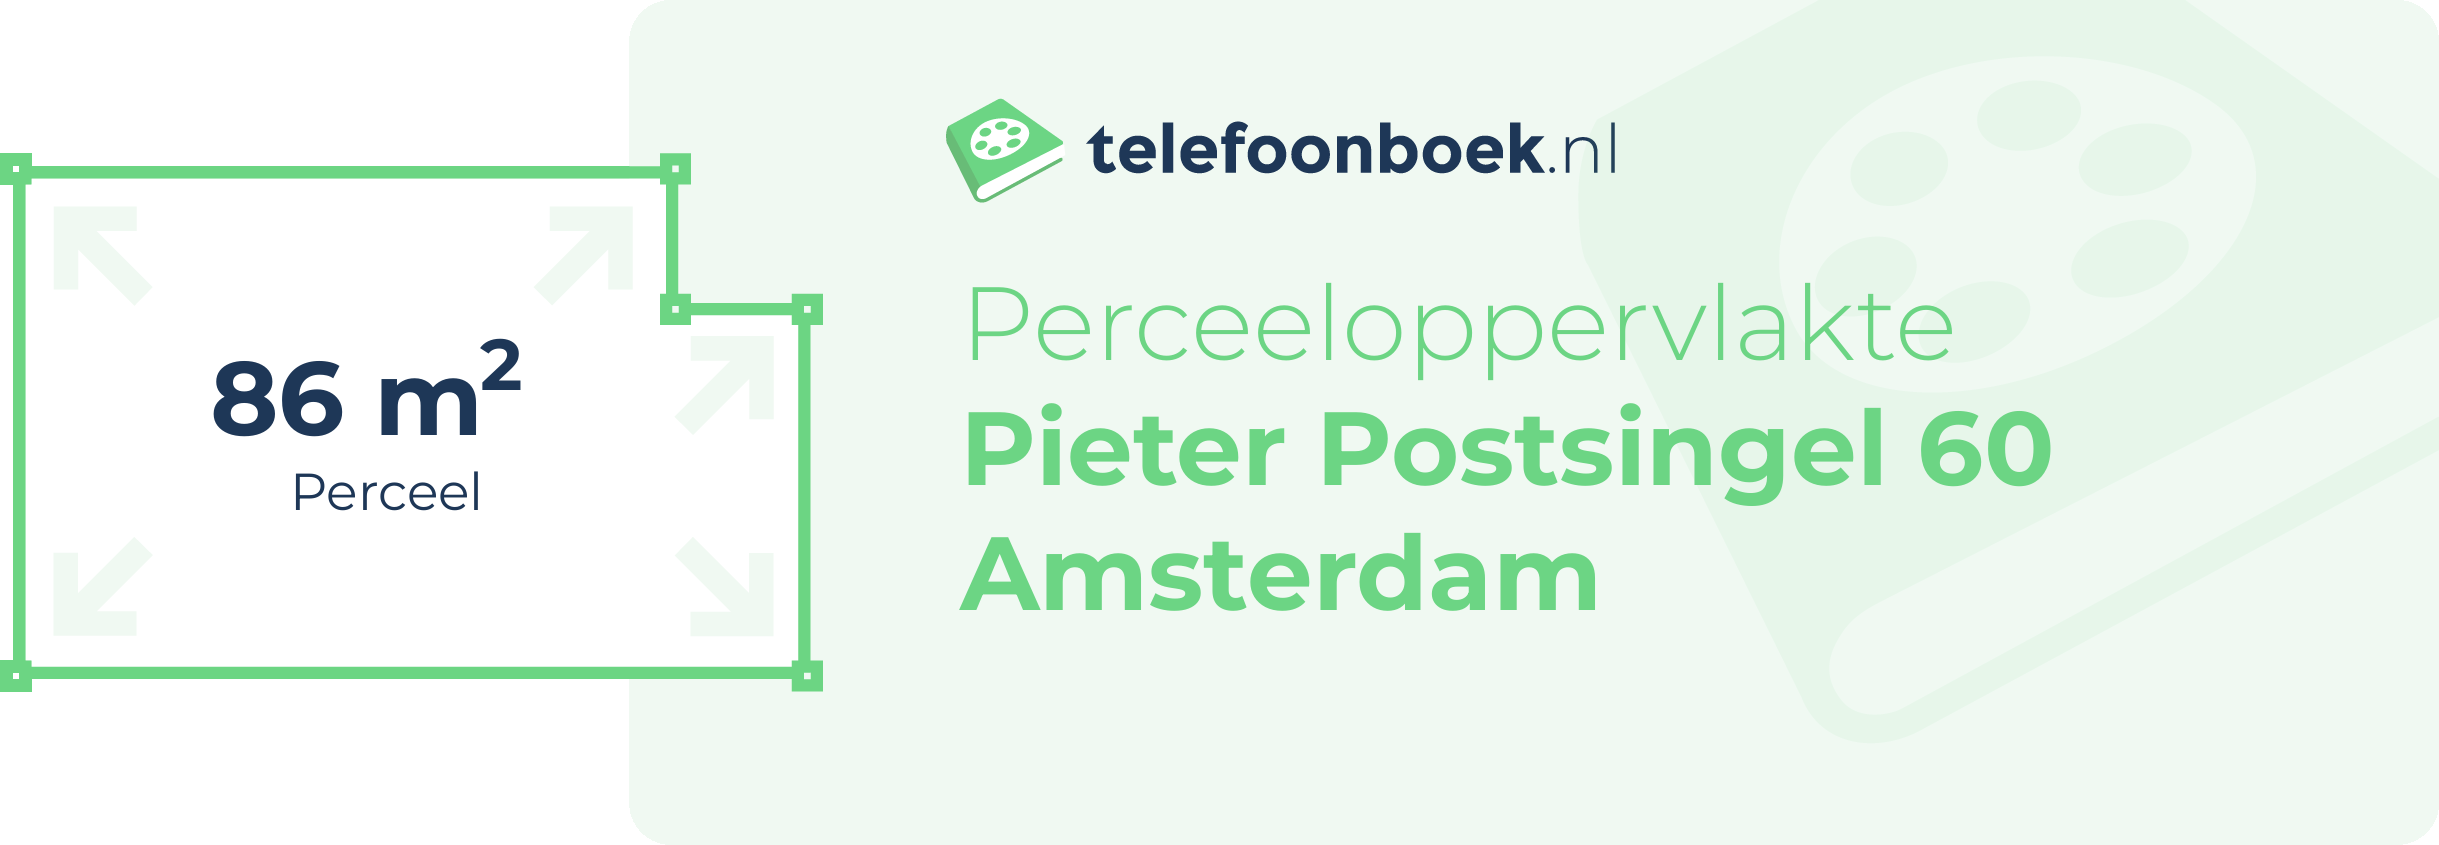 Perceeloppervlakte Pieter Postsingel 60 Amsterdam